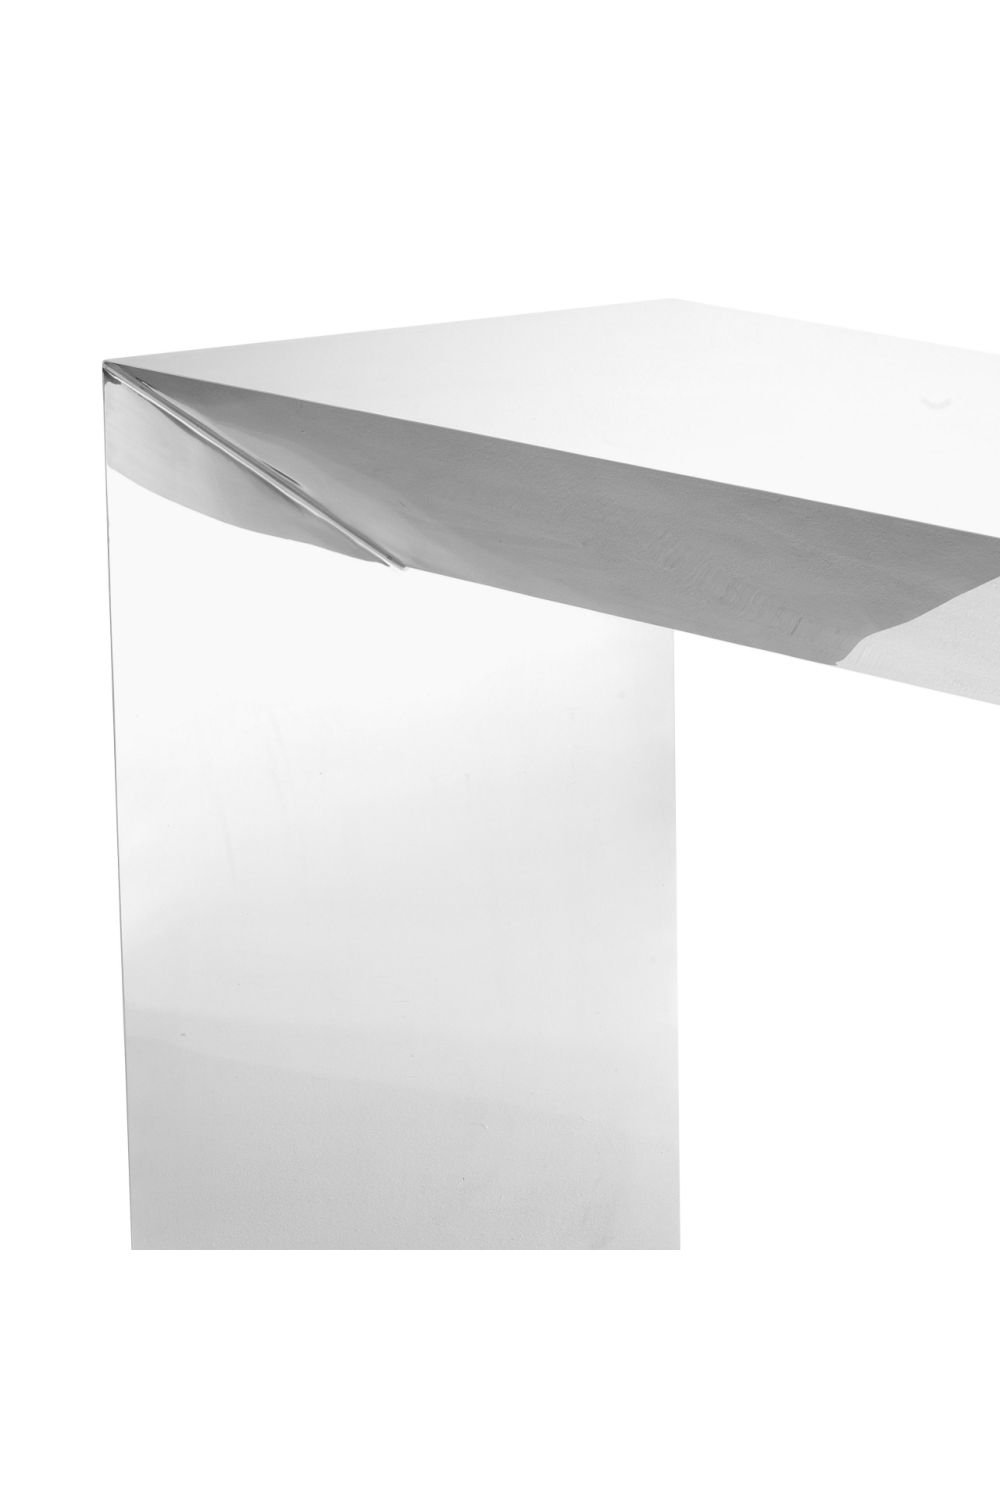 Silver Console Table | Eichholtz Carlow | #1 Eichholtz Retailer